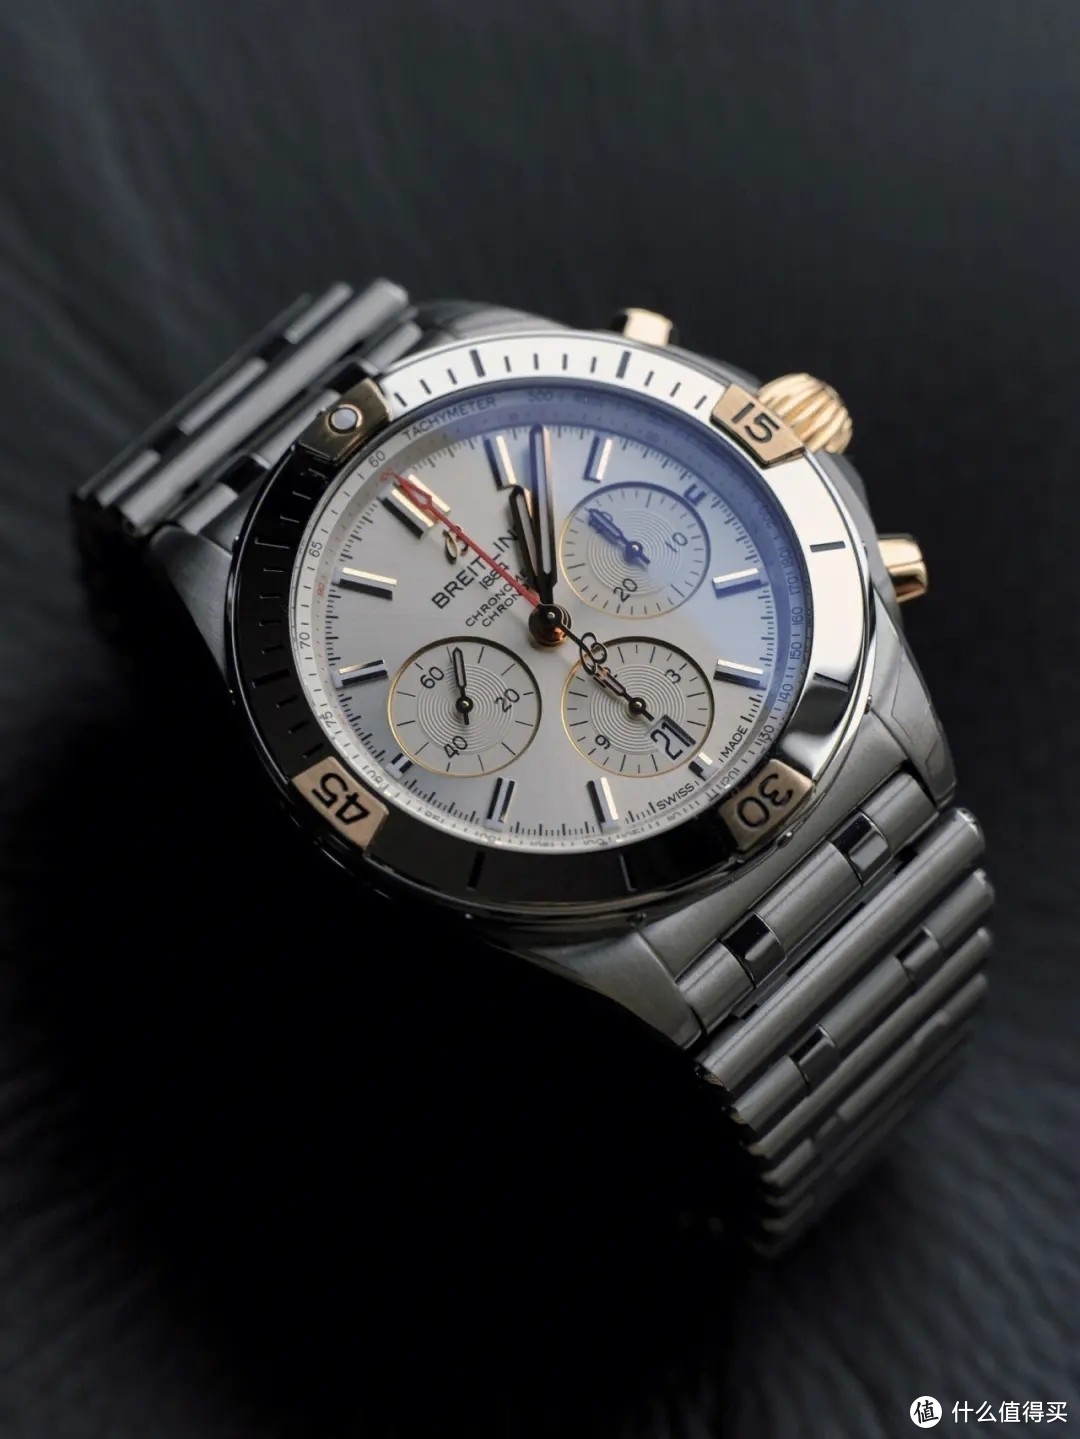 分享我喜欢的腕表和钟表品牌及款式